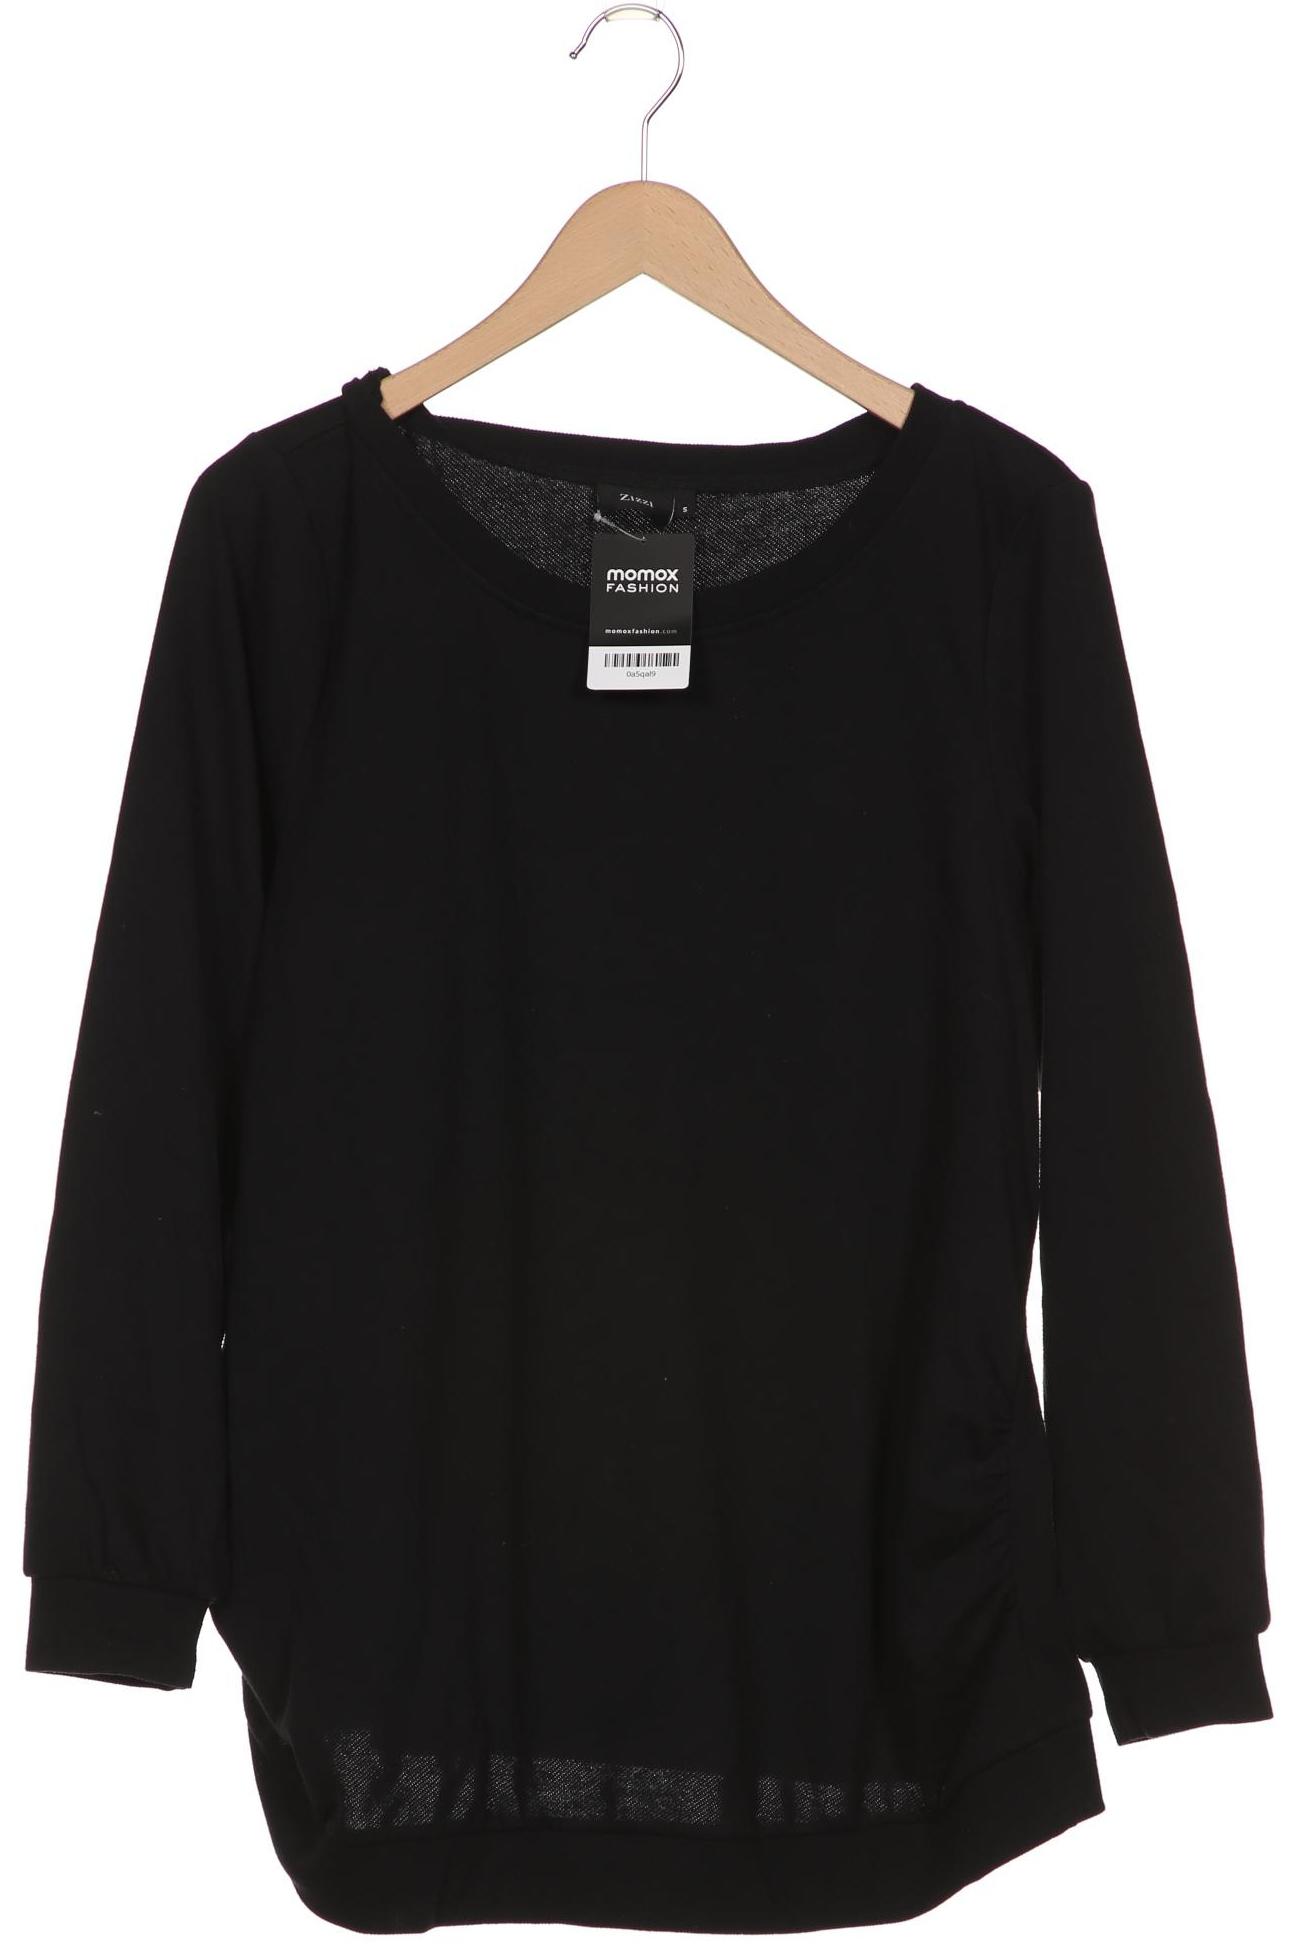 Zizzi Damen Sweatshirt, schwarz, Gr. 36 von Zizzi